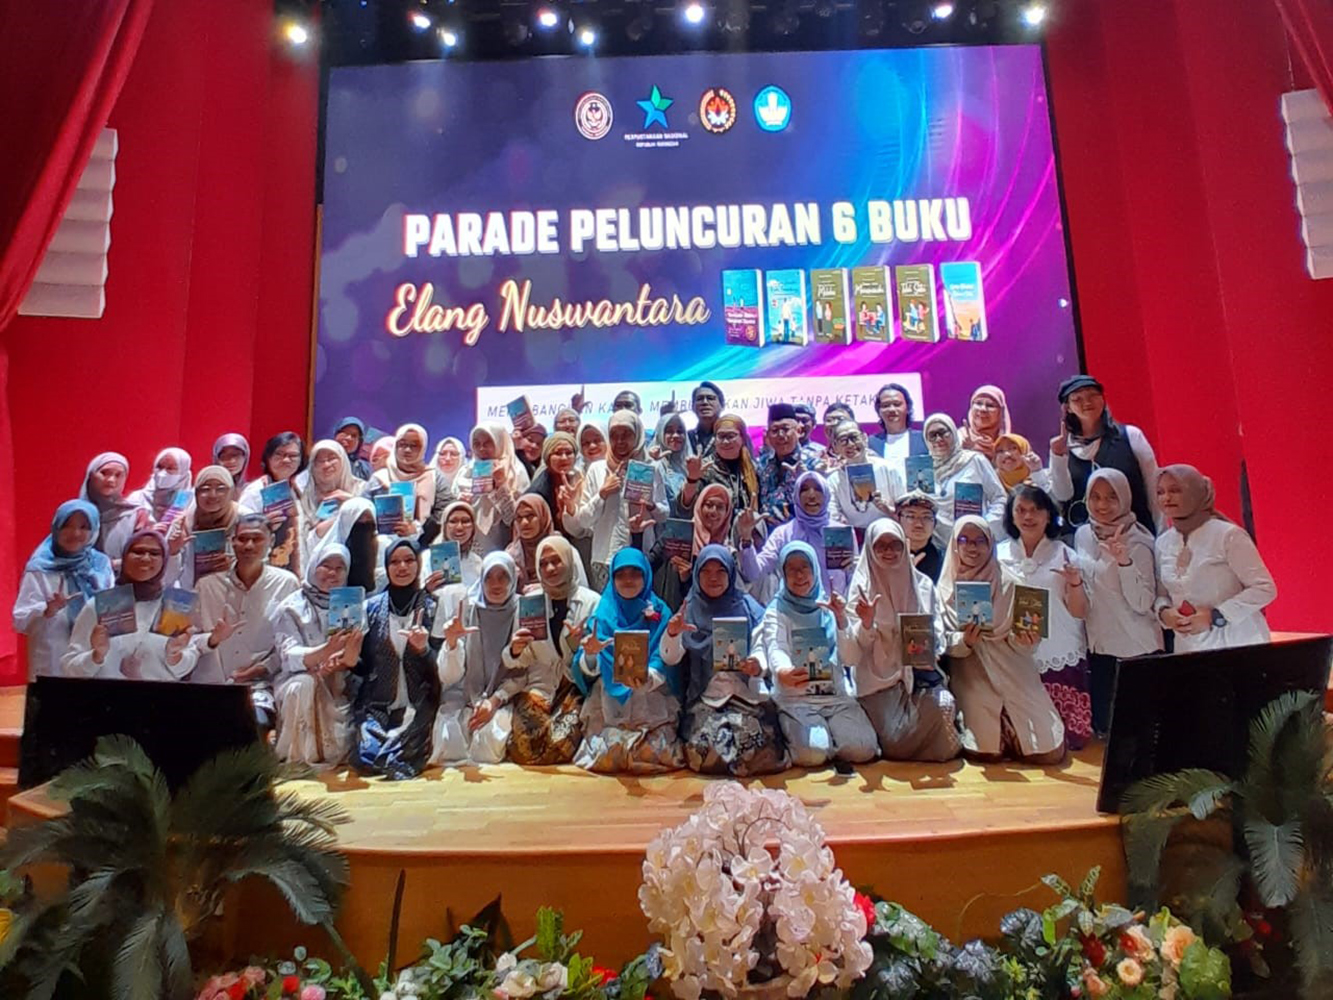 Parade Peluncuran 6 Buku Elang Nuswantara, 14 Oktober 2023 lalu di Perpustakaan Nasional Republik Indonesia | Foto: Dokumentasi Pribadi